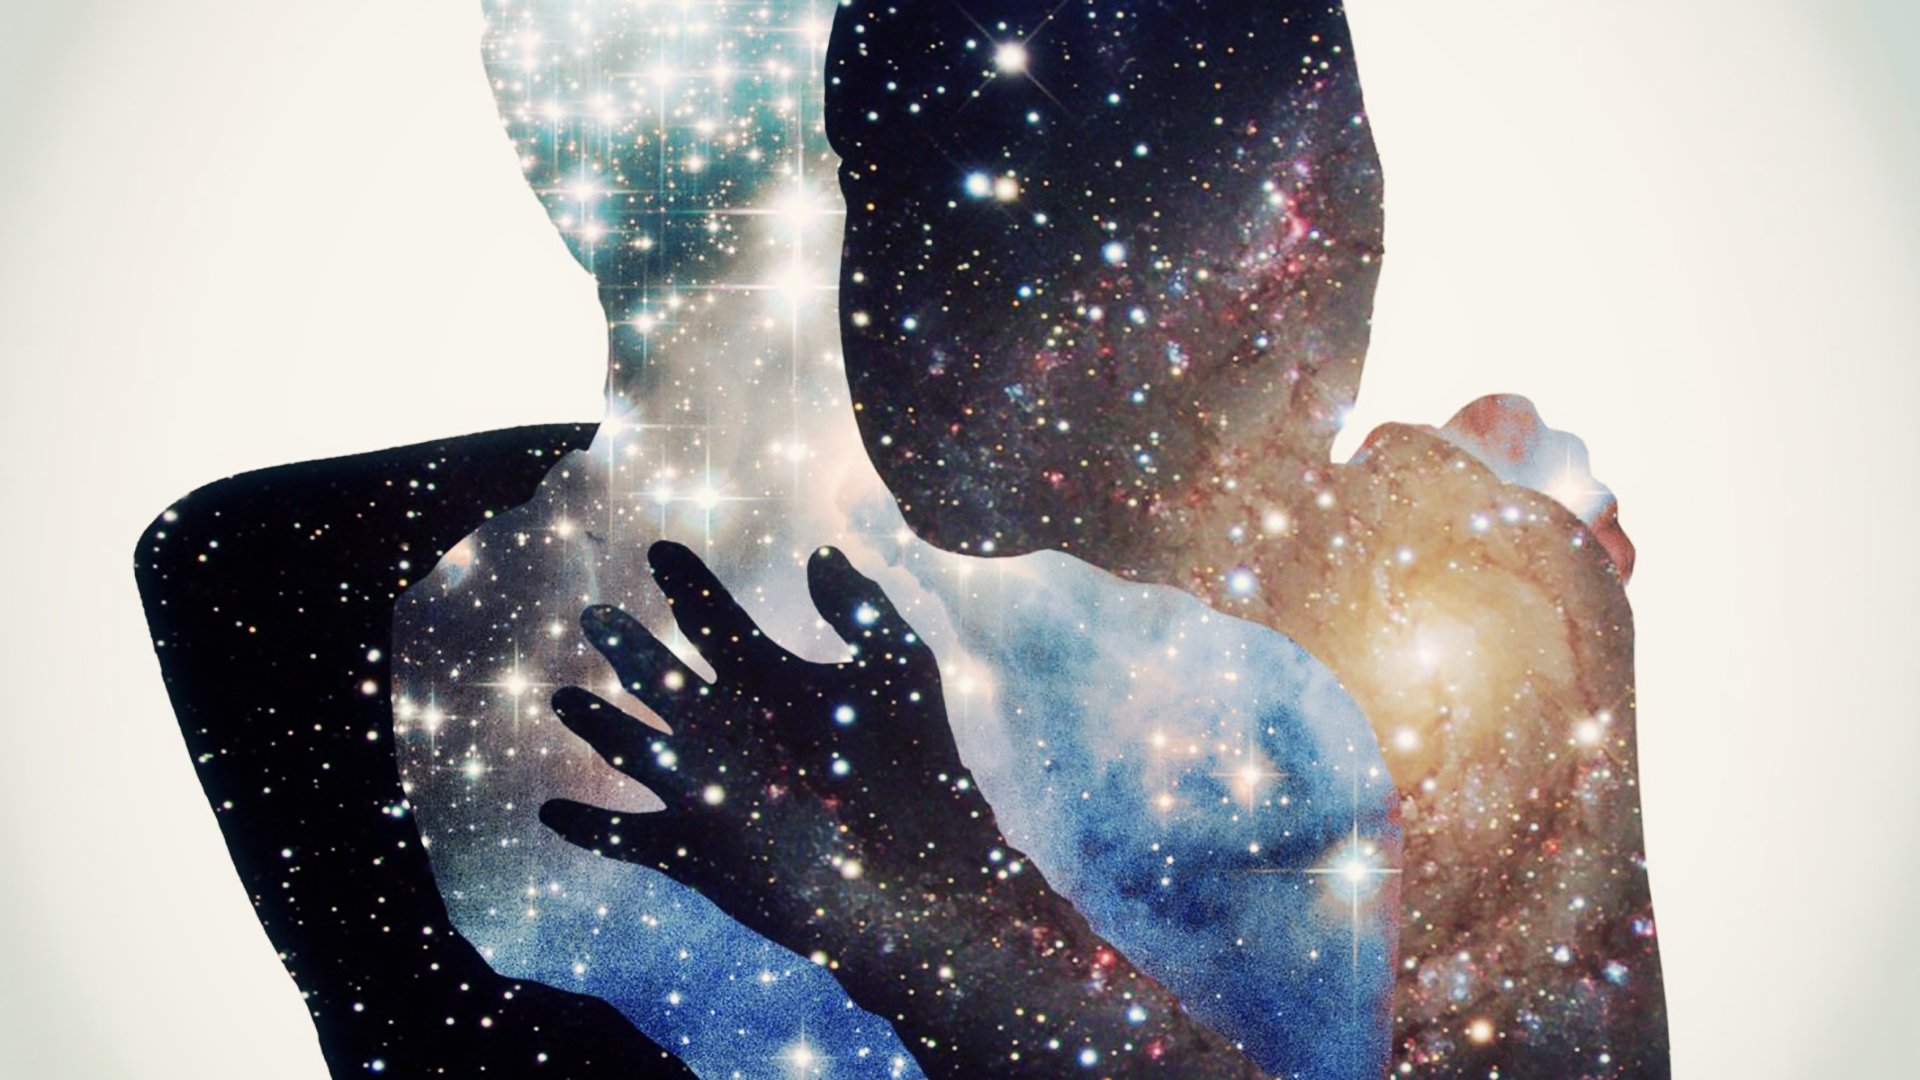 Песня сильная притяжение. Объятия космос. Космос внутри человека. Вселенная мужчина и женщина. Вселенная в руках.